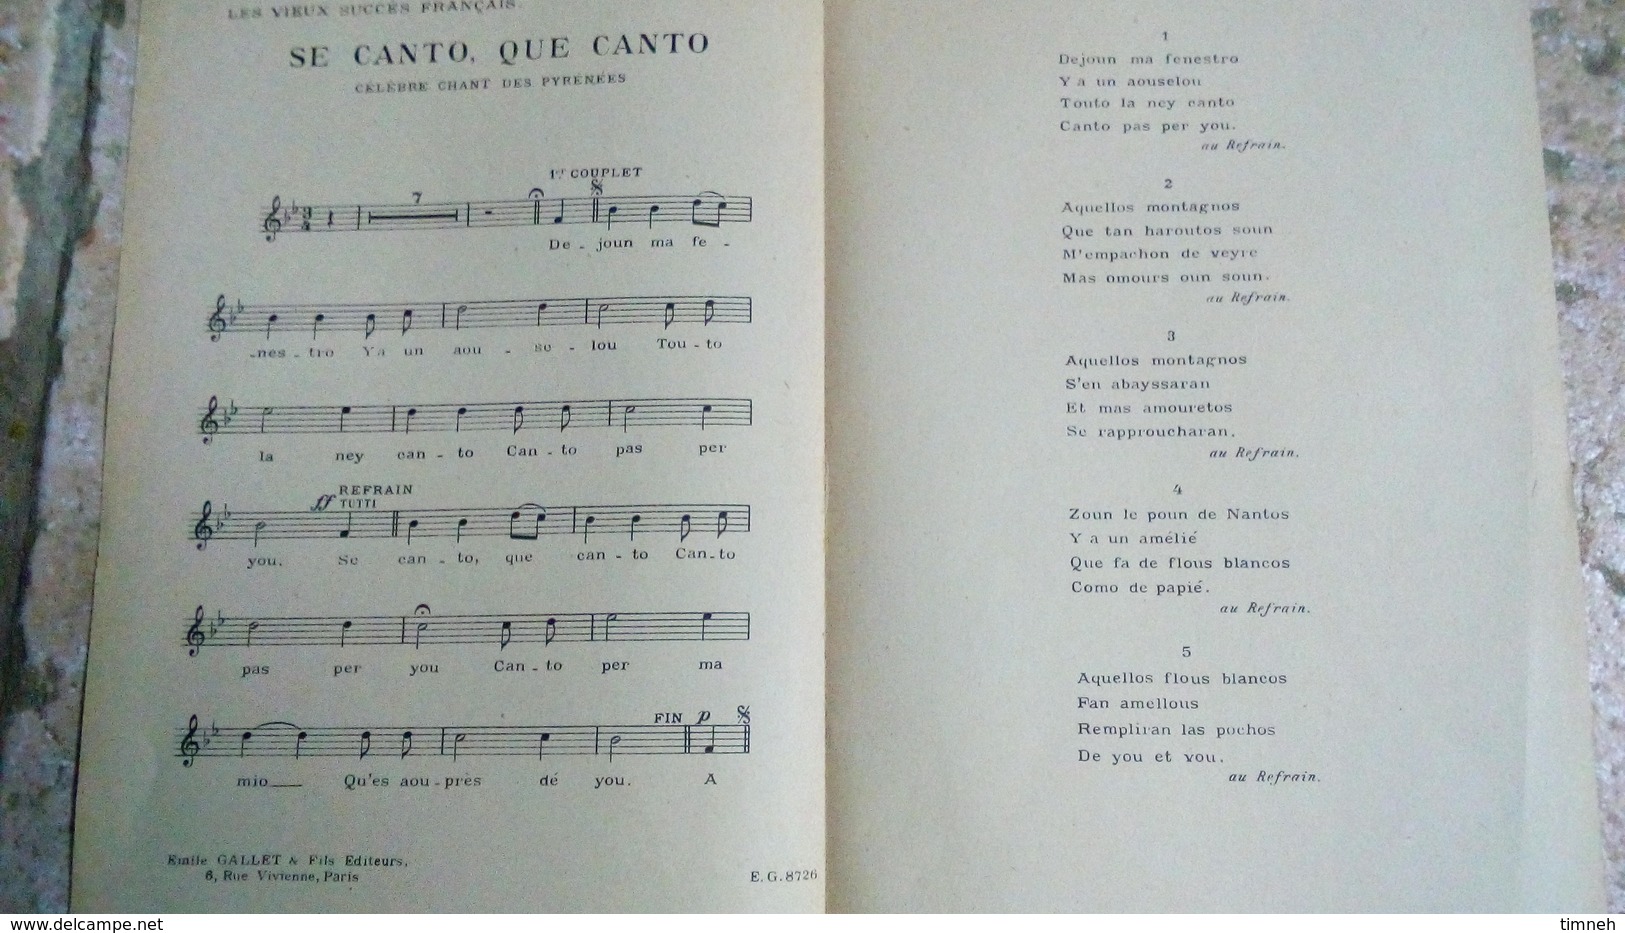 SE CANTO QUE CANTO - CELEBRE CHANSON DES PYRENEES - CHANT SEUL - LES VIEUX SUCCES FRANCAIS - Folk Music